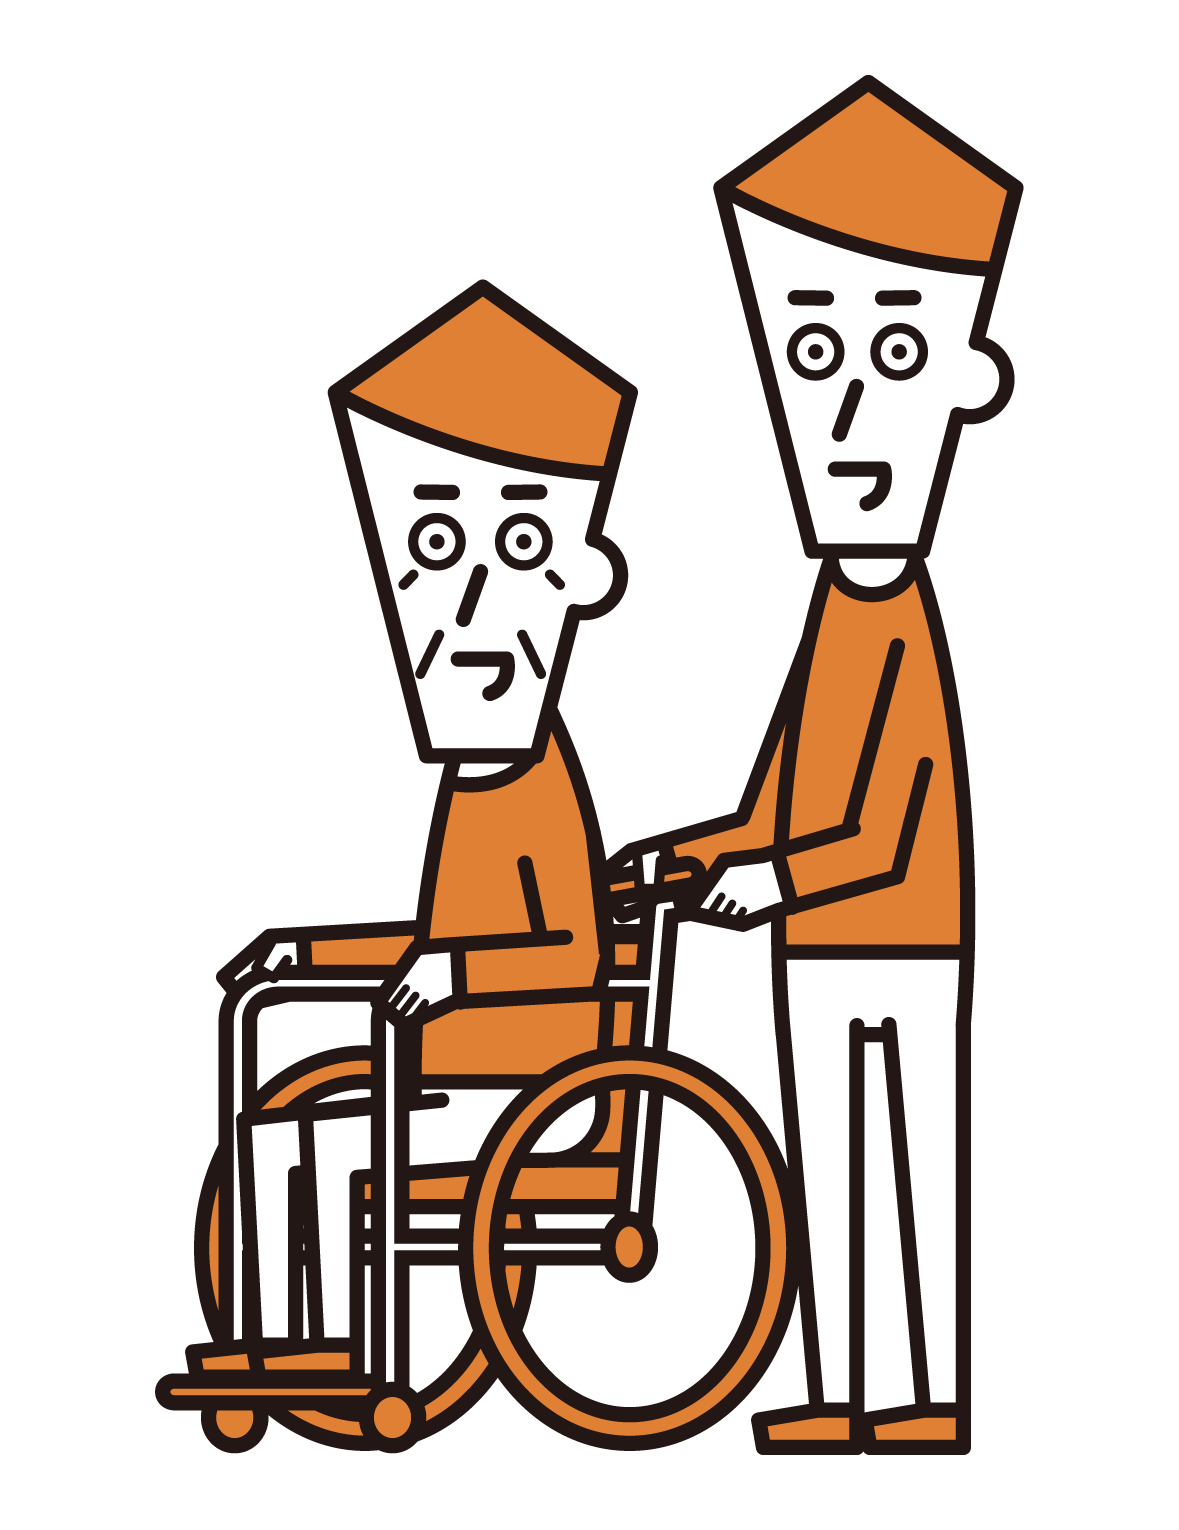 坐在輪椅上的人（祖父）和推人（男性）的插圖